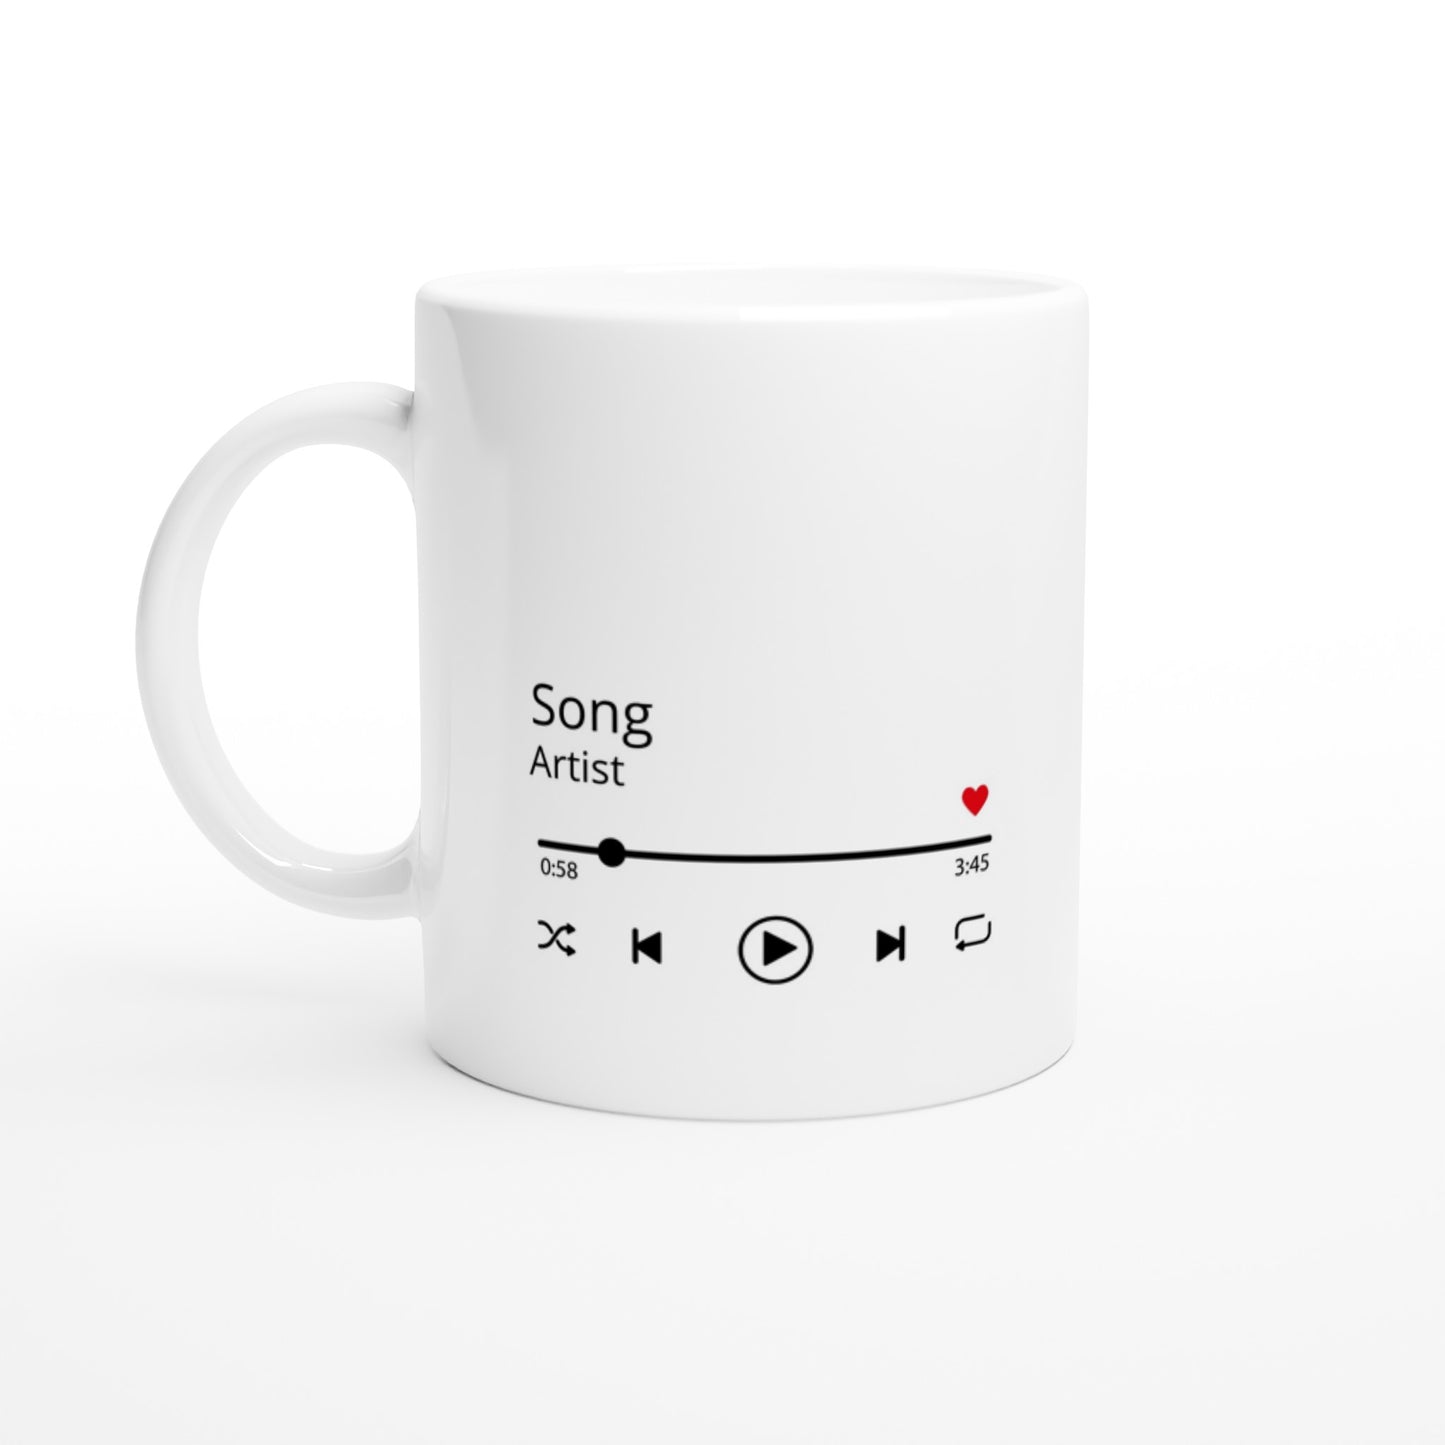 Music Mug - Your Favorite Music Song and Artist Player Mug 330ml